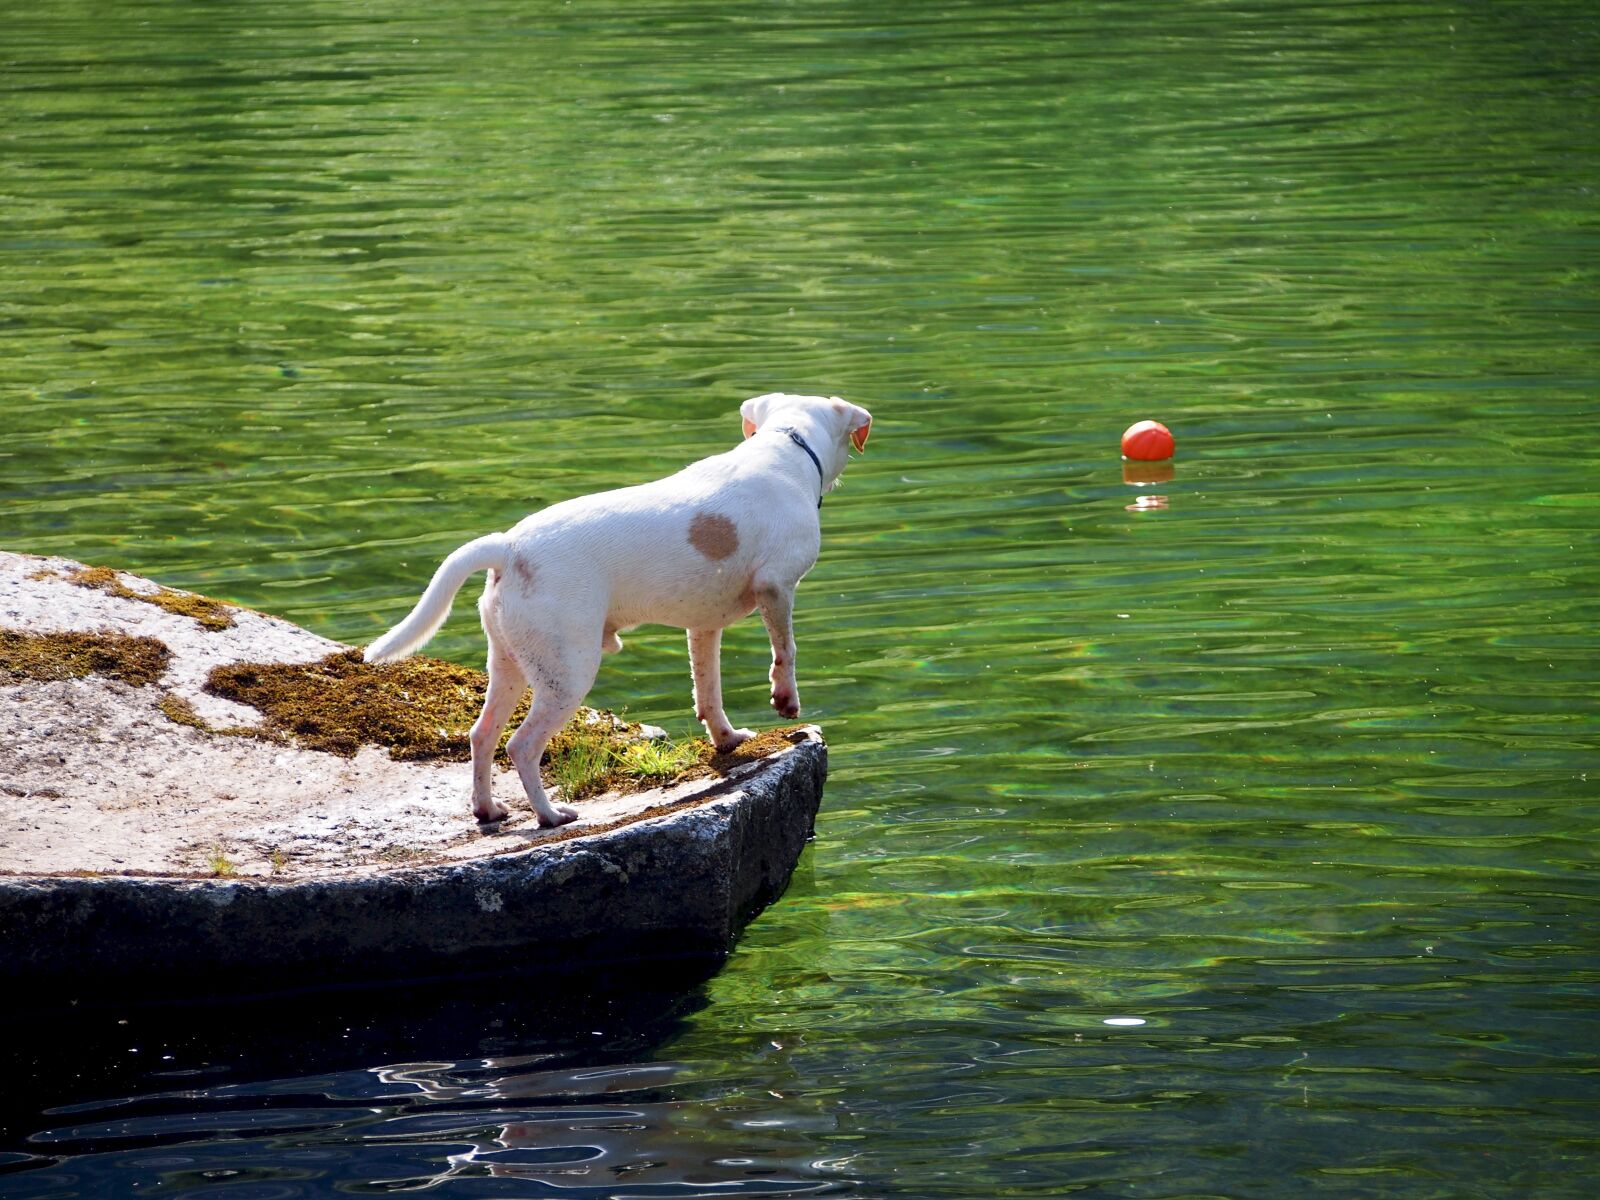 Olympus M.Zuiko Digital ED 40-150mm F4-5.6 sample photo. Dog, white dog, dog photography